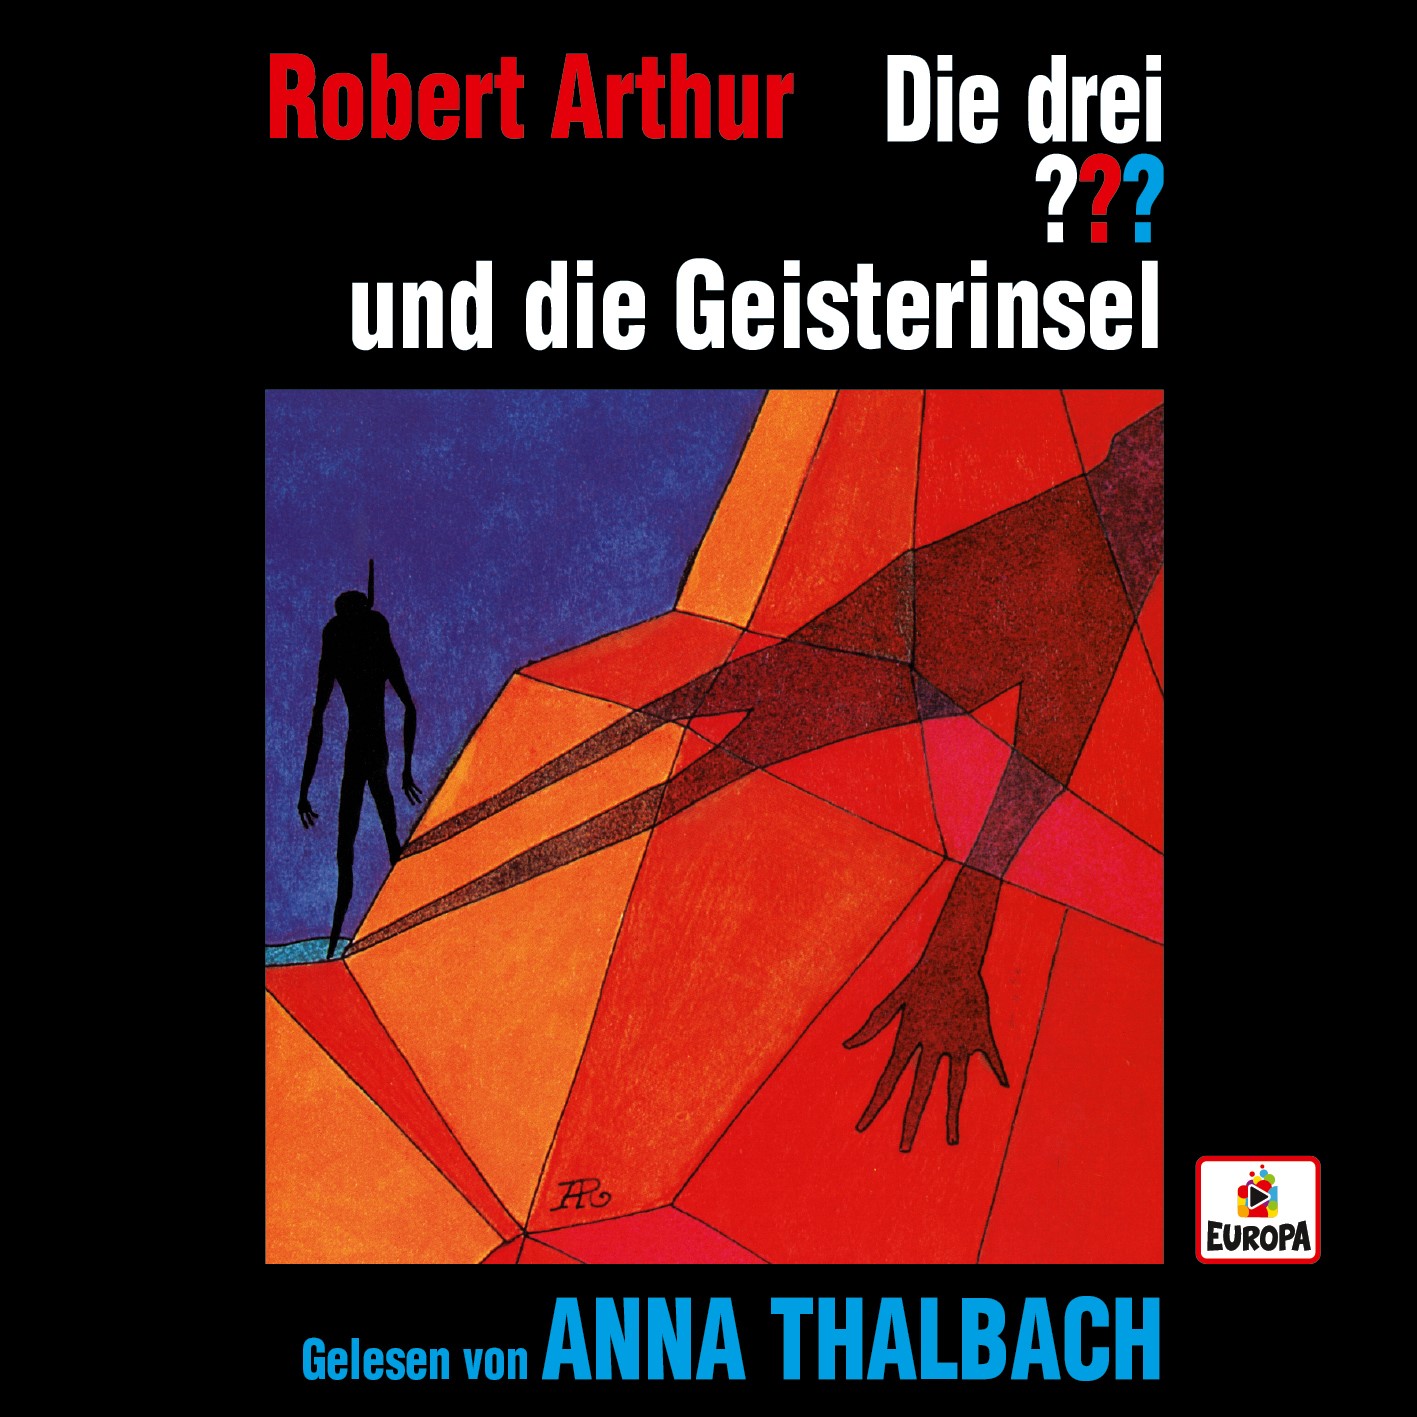 Neues Hörbuch mit Anna Thalbach!